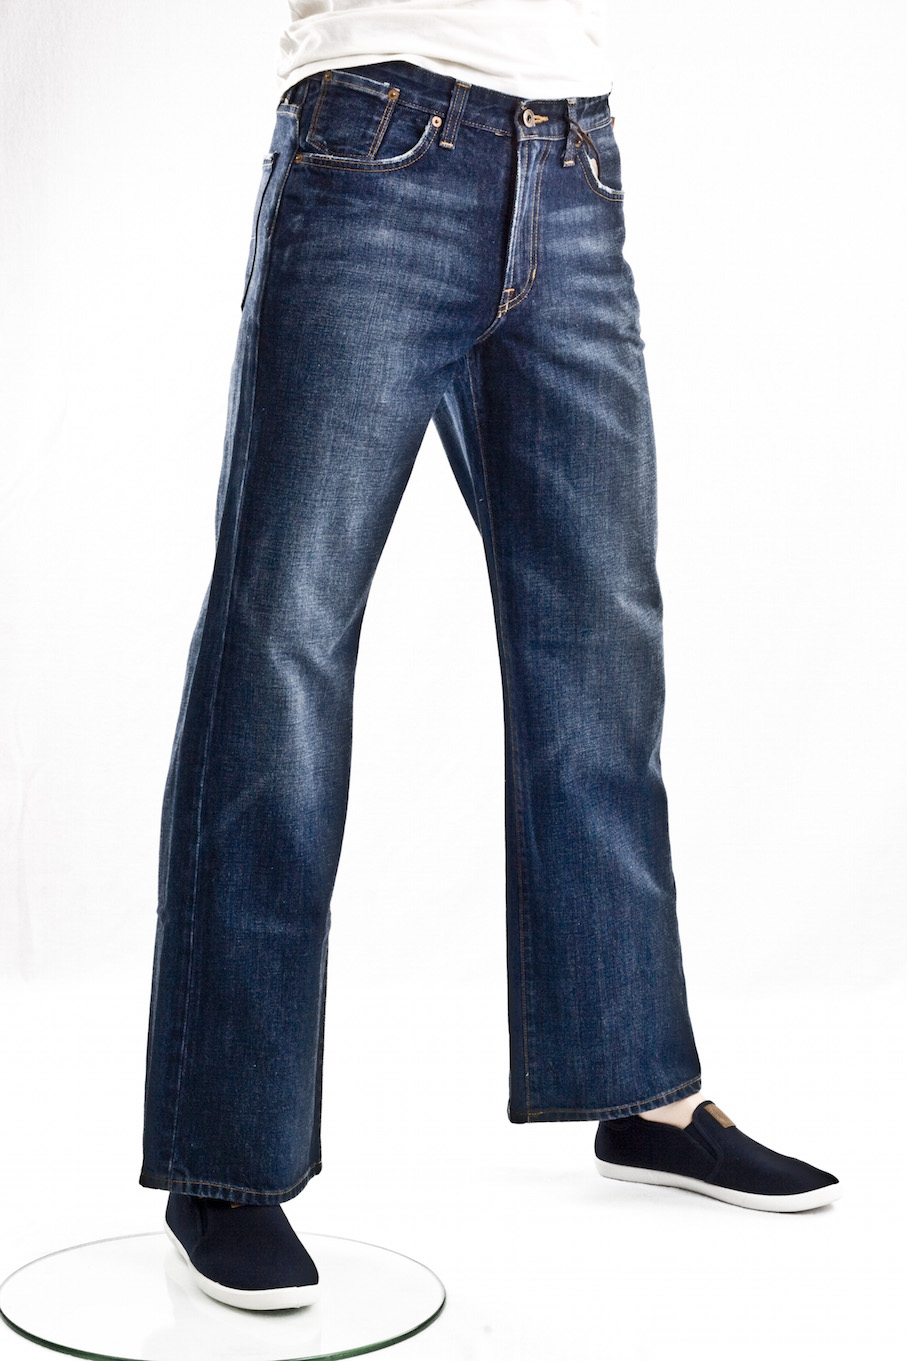 Мужские джинсы Big Star "Буткат" DIGGER DESIGNER Jeans